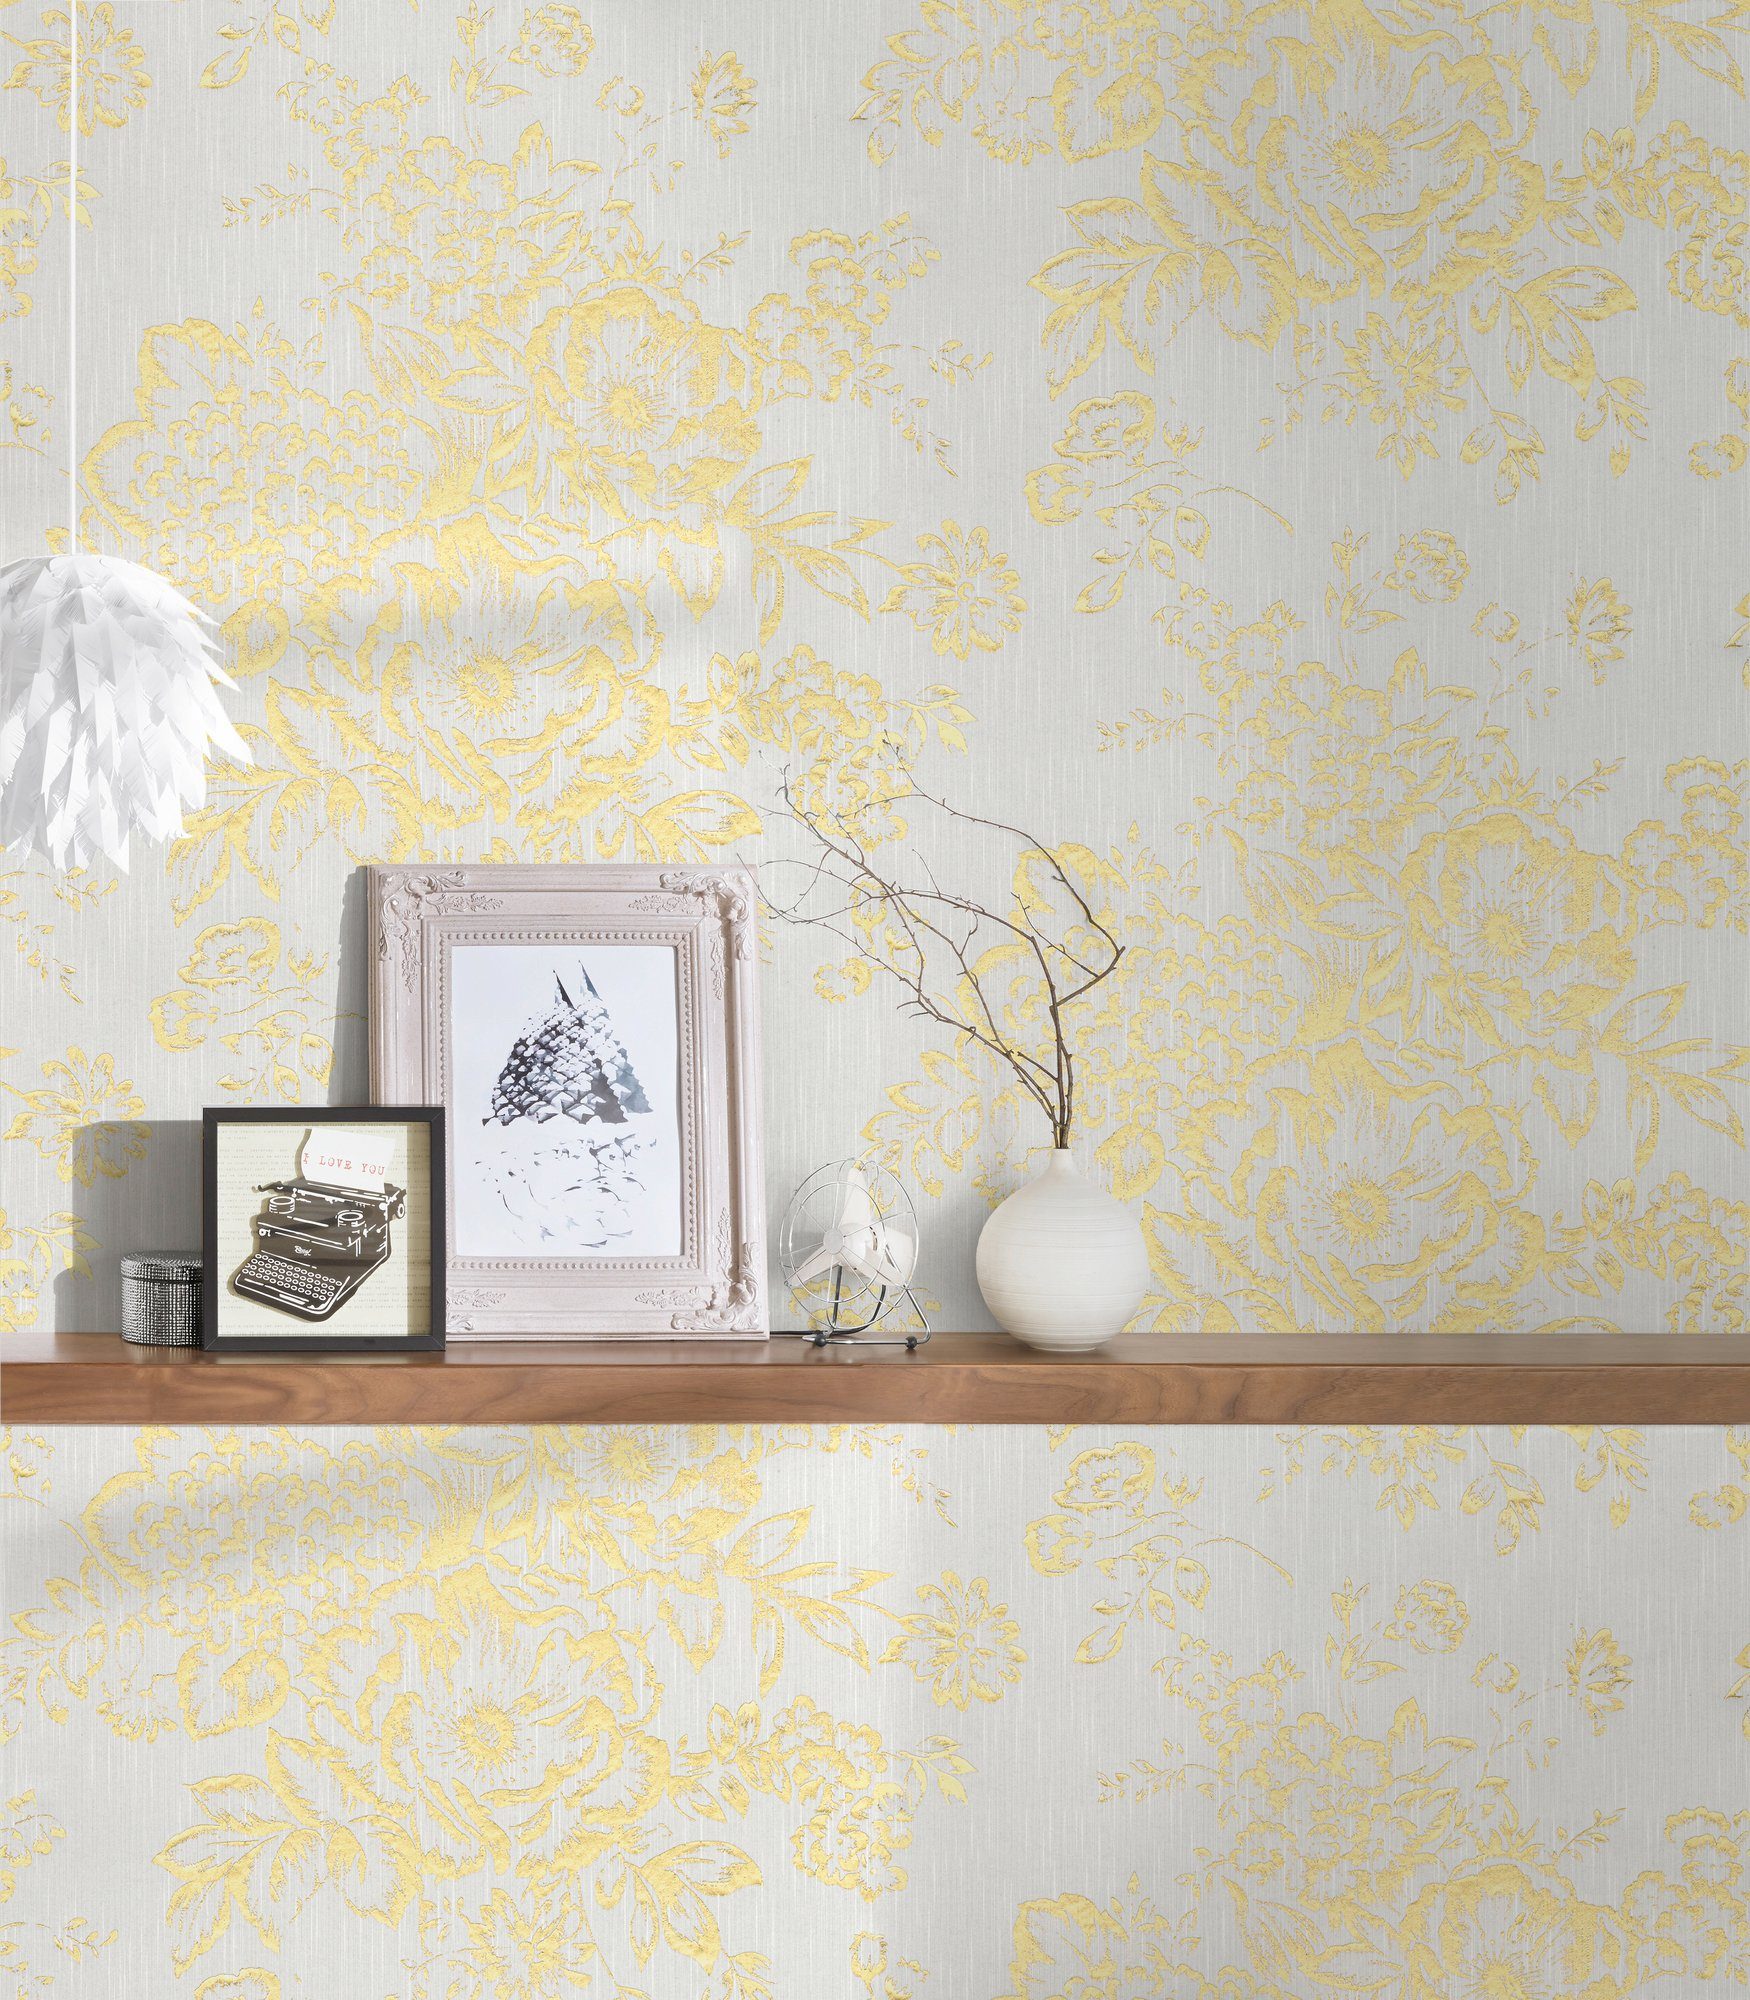 Barocktapete Architects matt, Textiltapete Blumen Paper floral, gold/weiß glänzend, Metallic samtig, Tapete Silk,